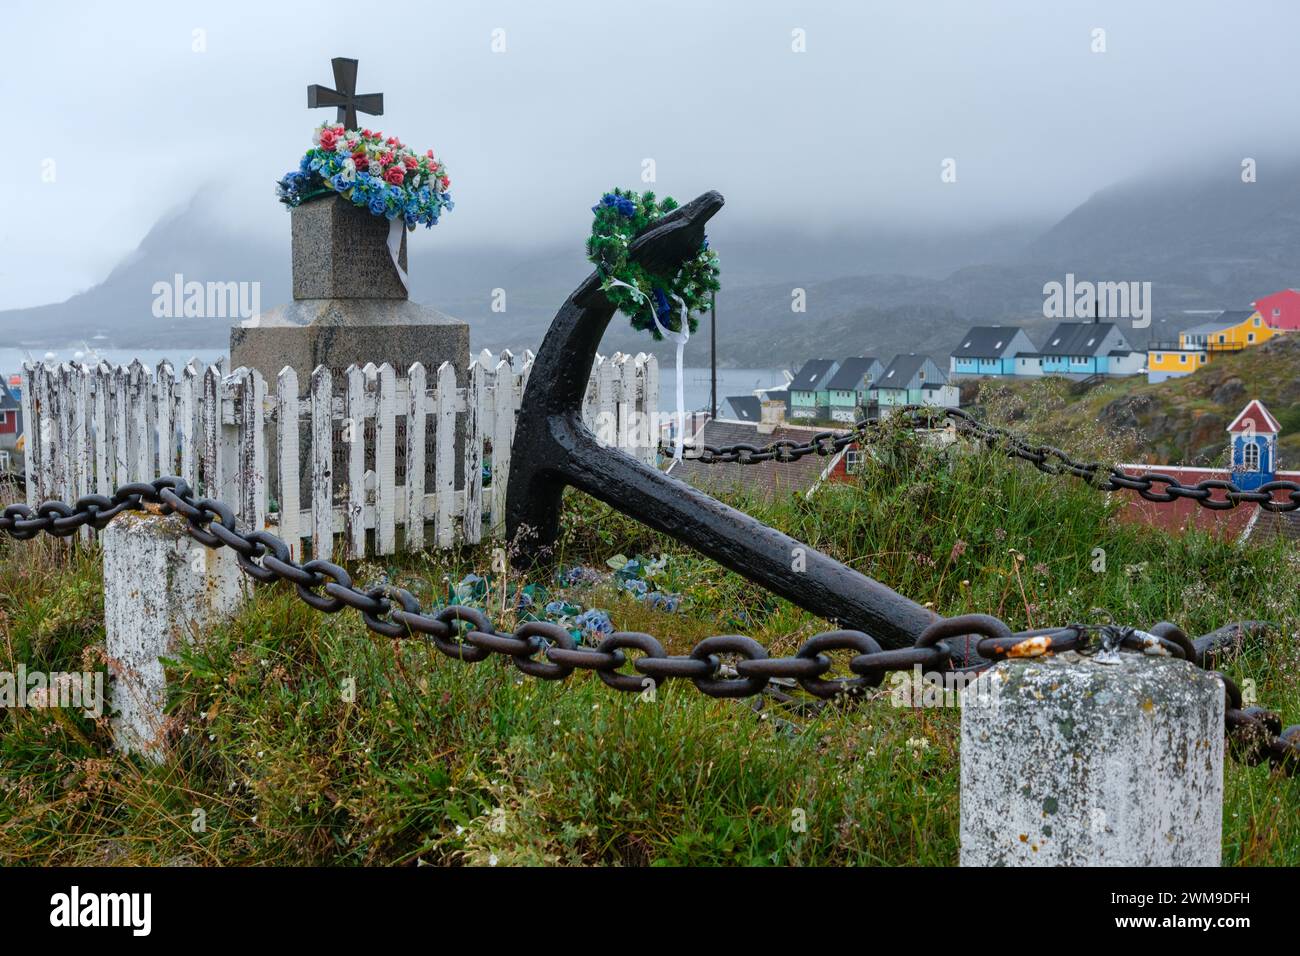 Ein Denkmal und ein großer Schiffsanker sind mit Blumenkränzen geschmückt. Sisimiut, Grönland. Stockfoto